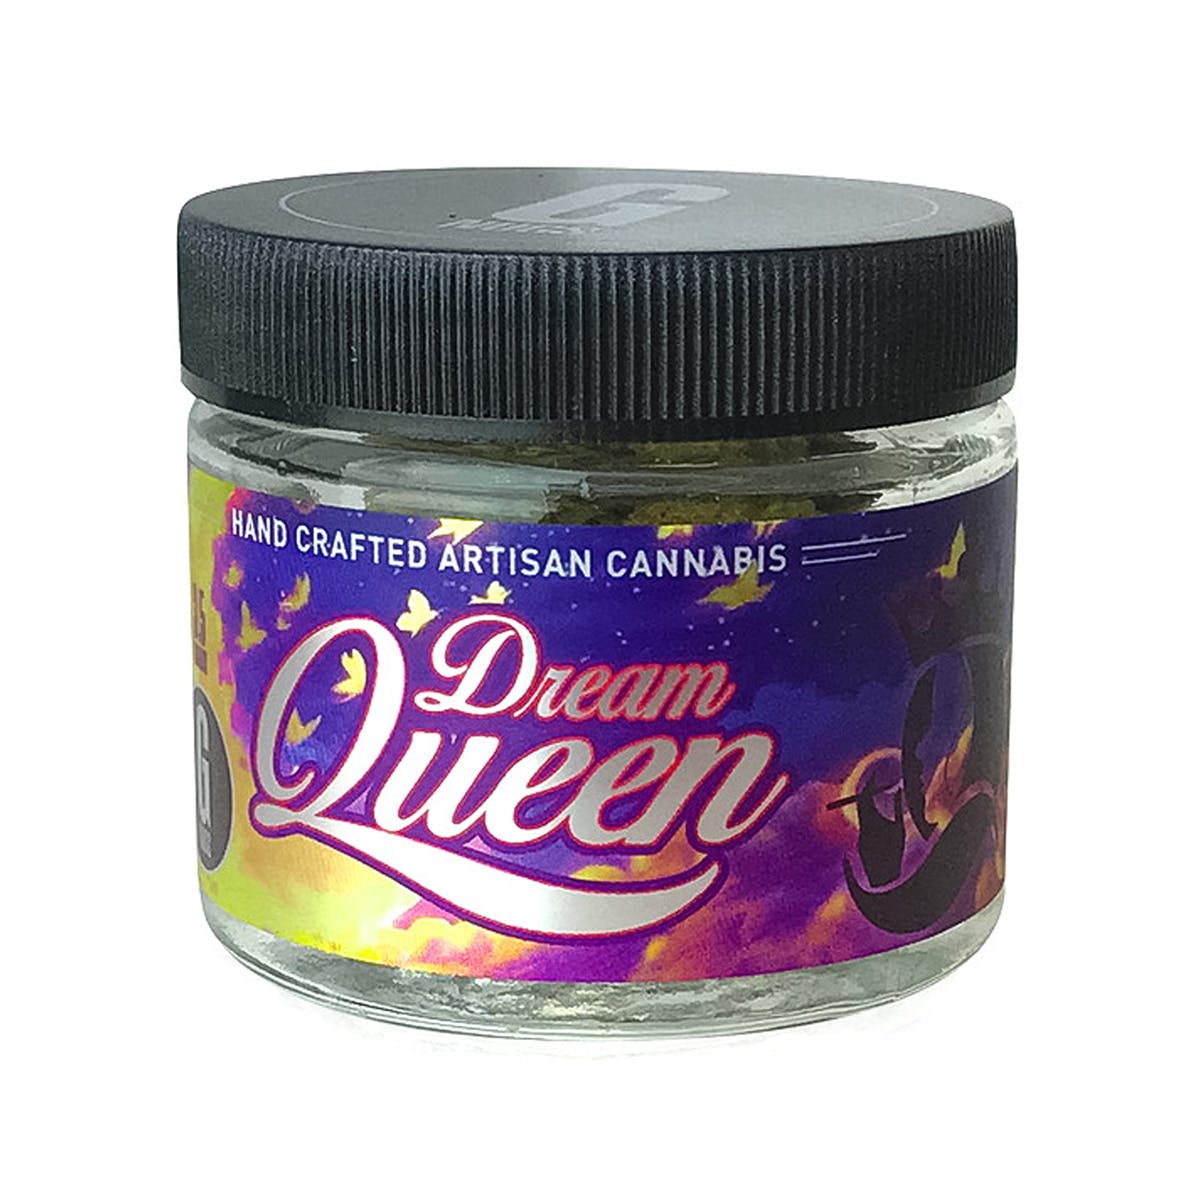 marijuana-dispensaries-herbs-and-essential-oils-in-hemet-g-nugs-dream-queen